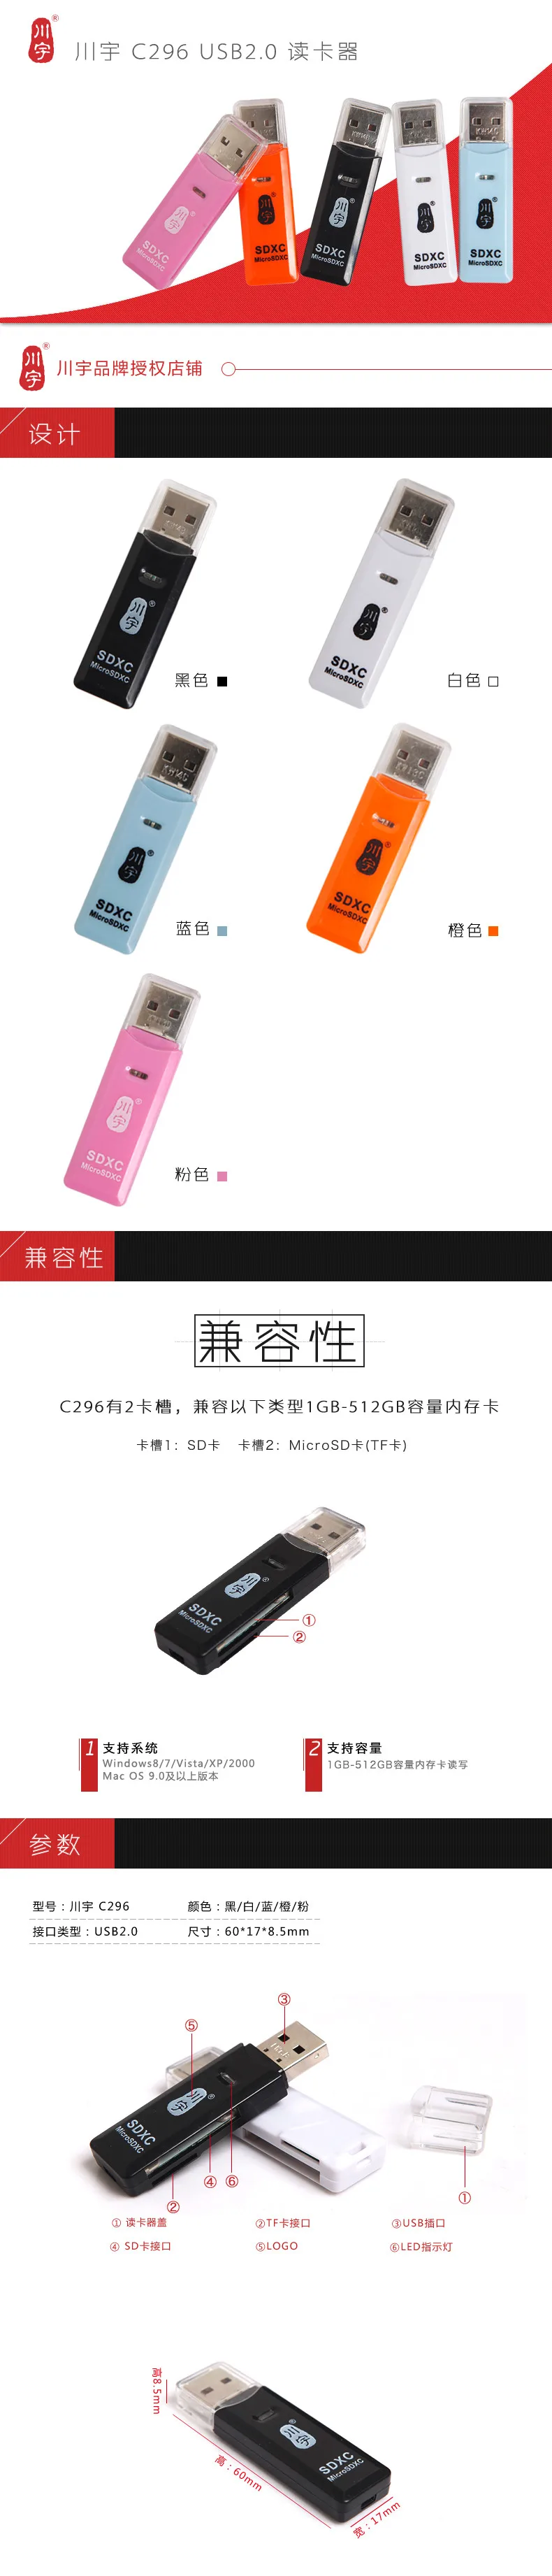 Высокое качество Кавау C296 2 в 1 USB 2.0 Card Reader Максимальная Поддержка 512 ГБ для SD карты MicroSD карты памяти SDHC SDXC карта адаптер